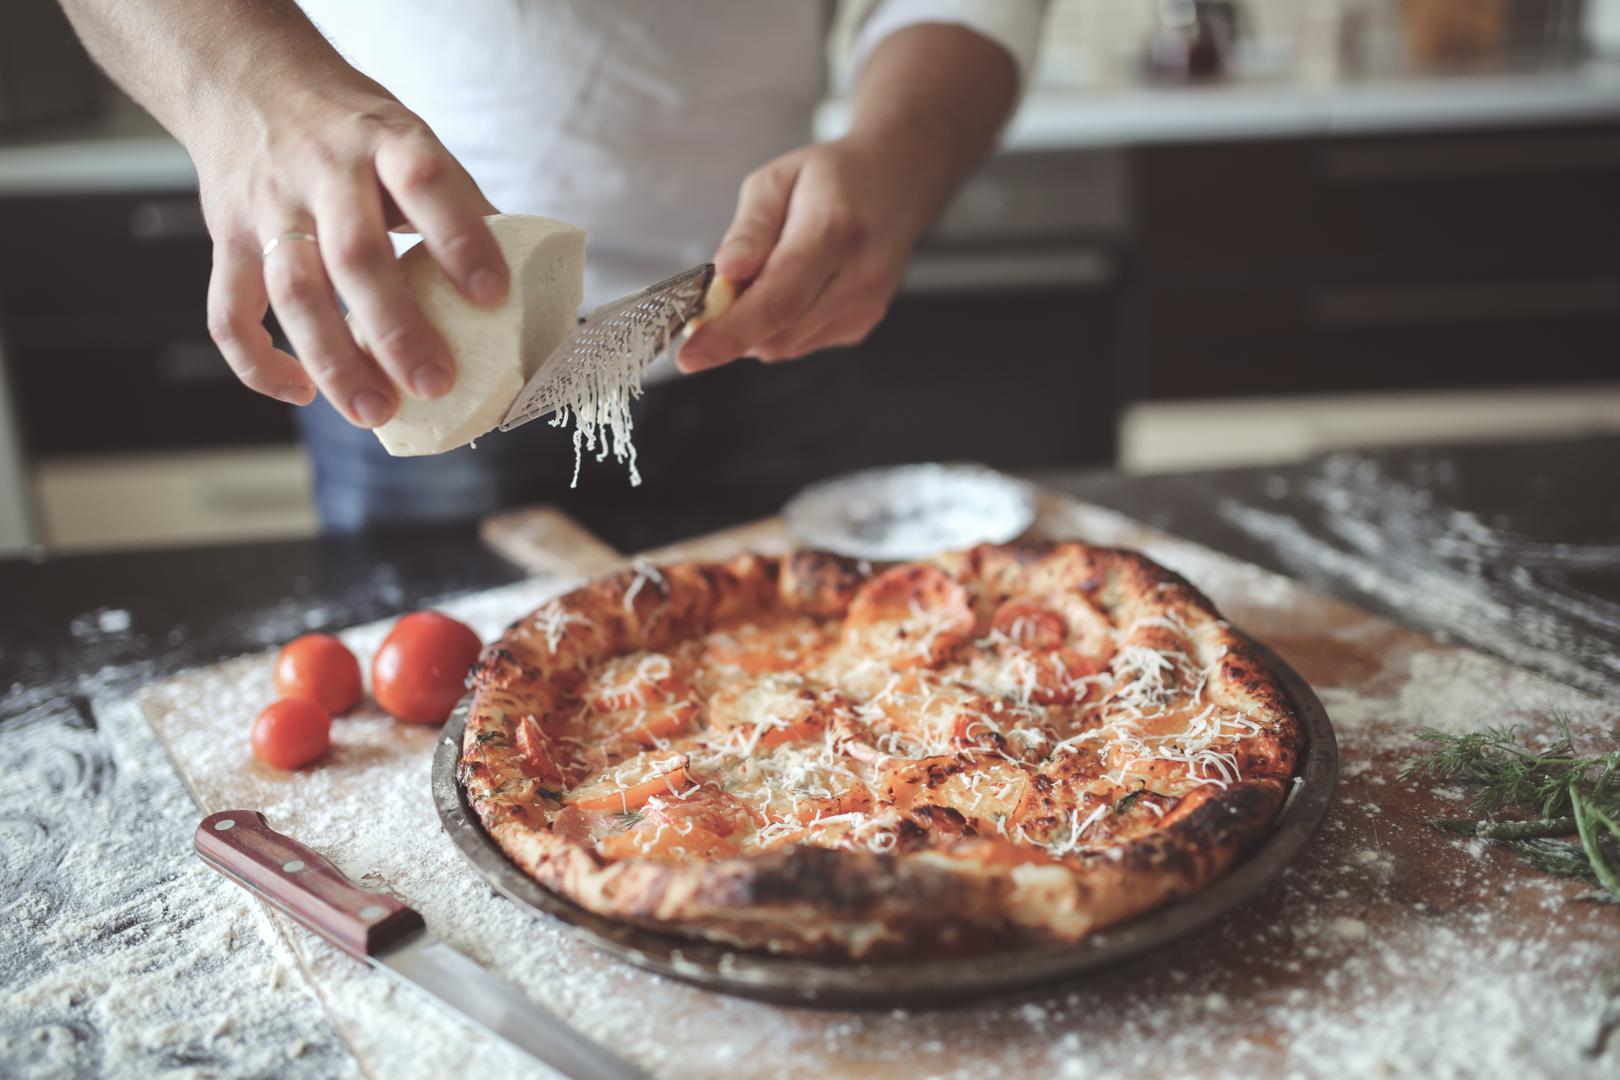 Ako se pitate u čemu je tajna da pizza i kod kuće uvijek ispadne savršena, morate znati da nije riječ o sastojcima. Njih ćete birati po svom osobnom ukusu.